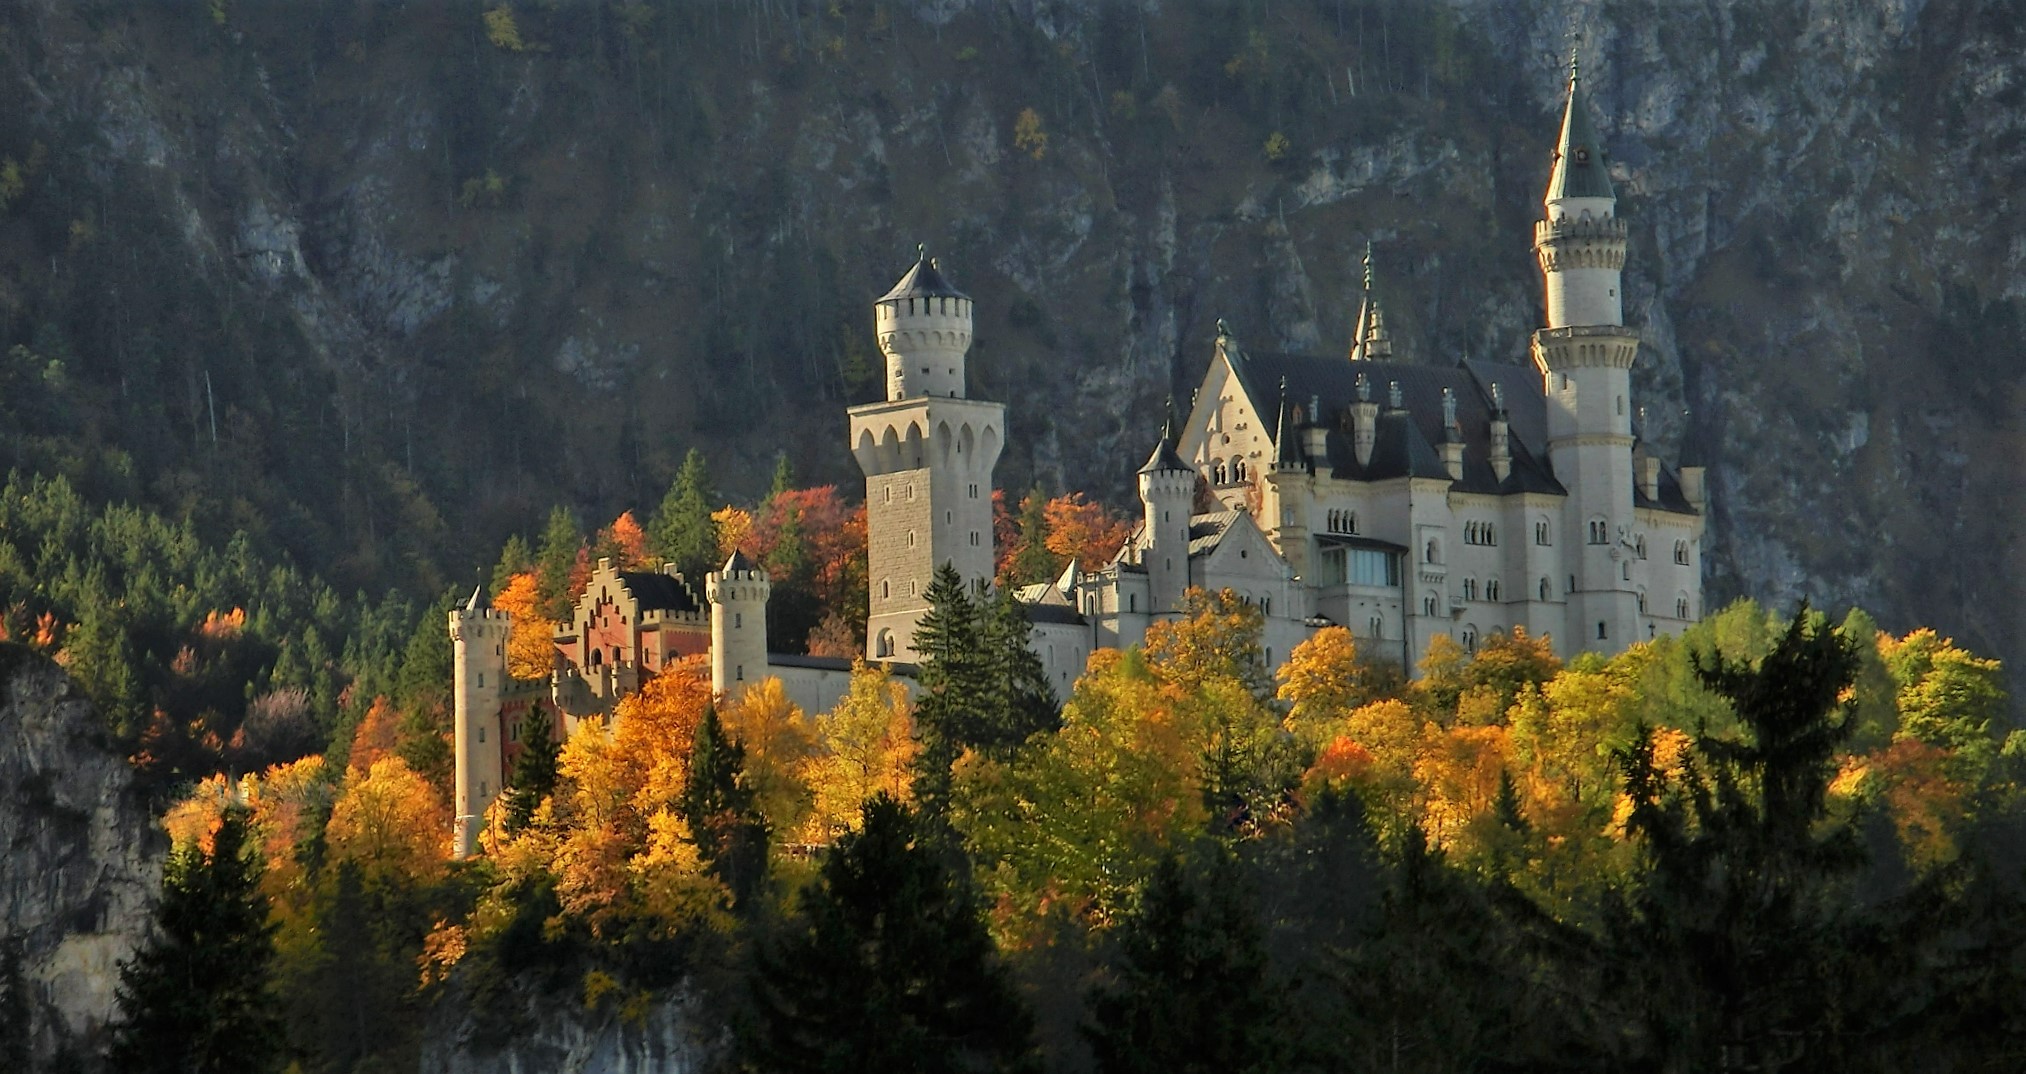 Märchenschloss im Märchenwald